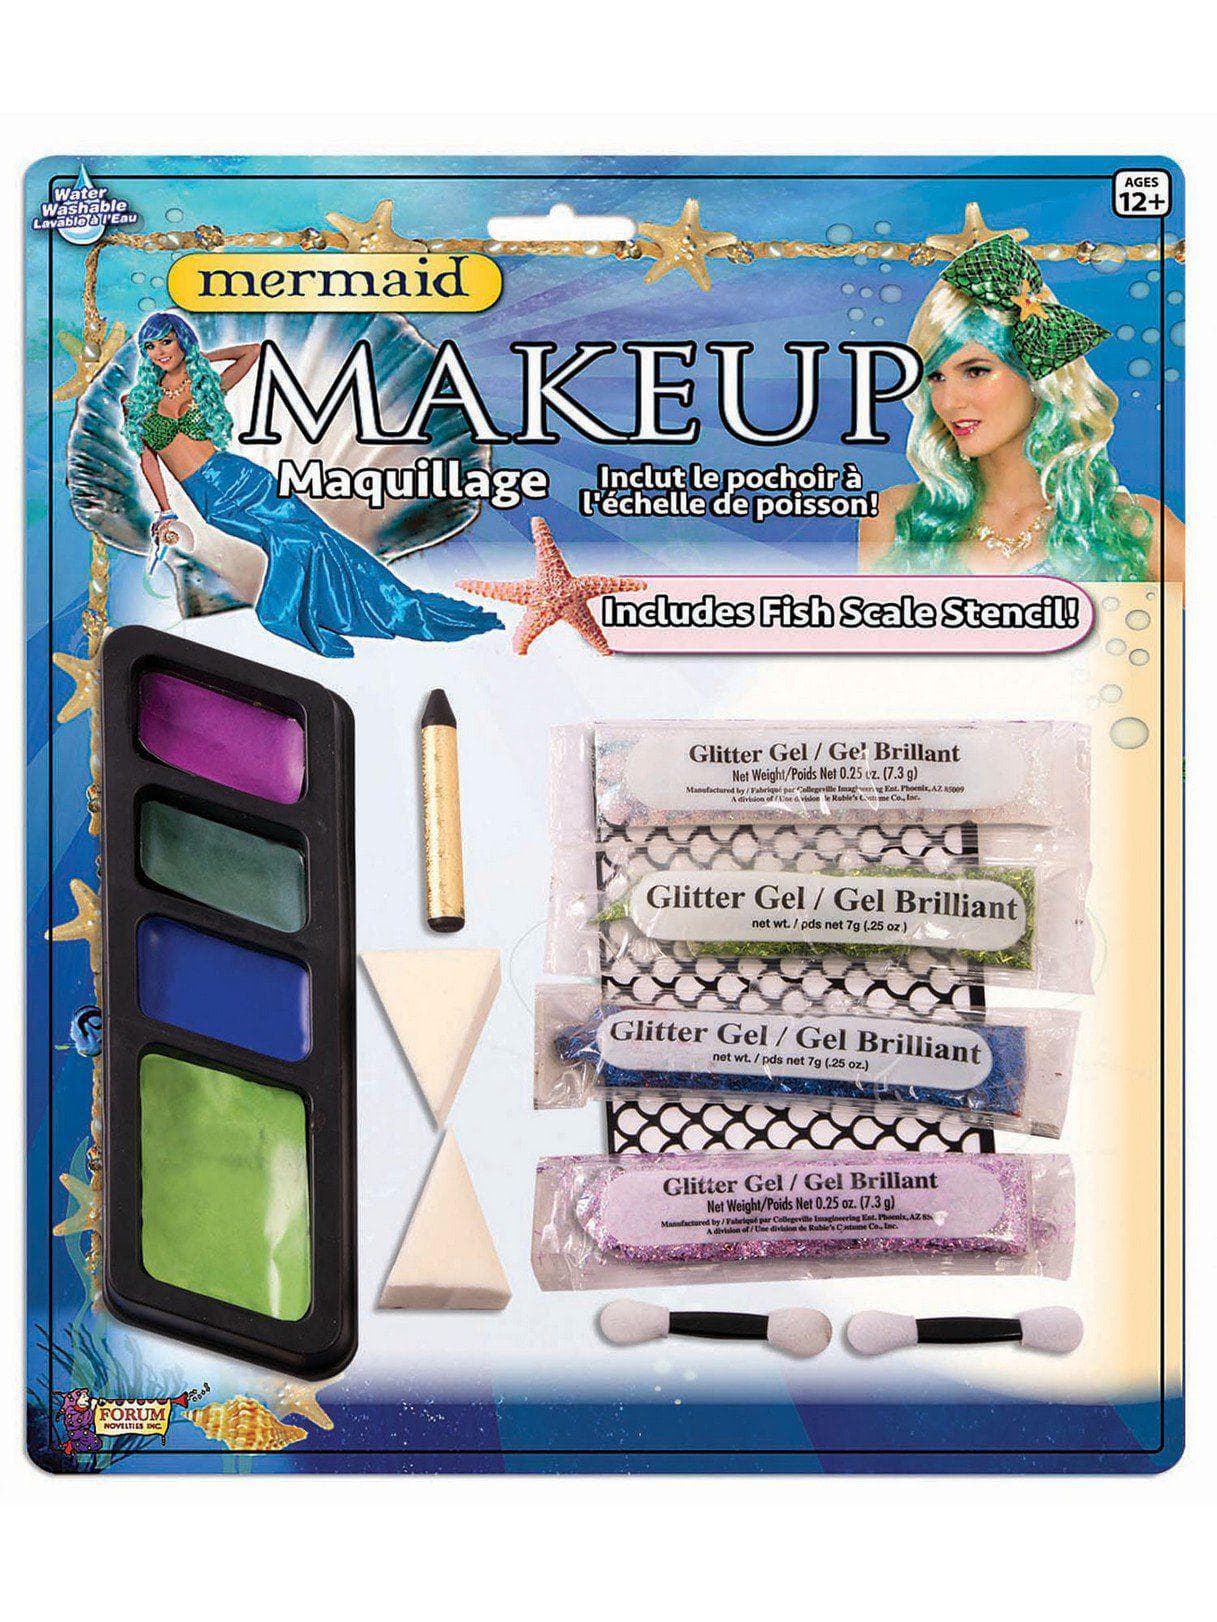 Makeup Kit for Mermaid - costumes.com